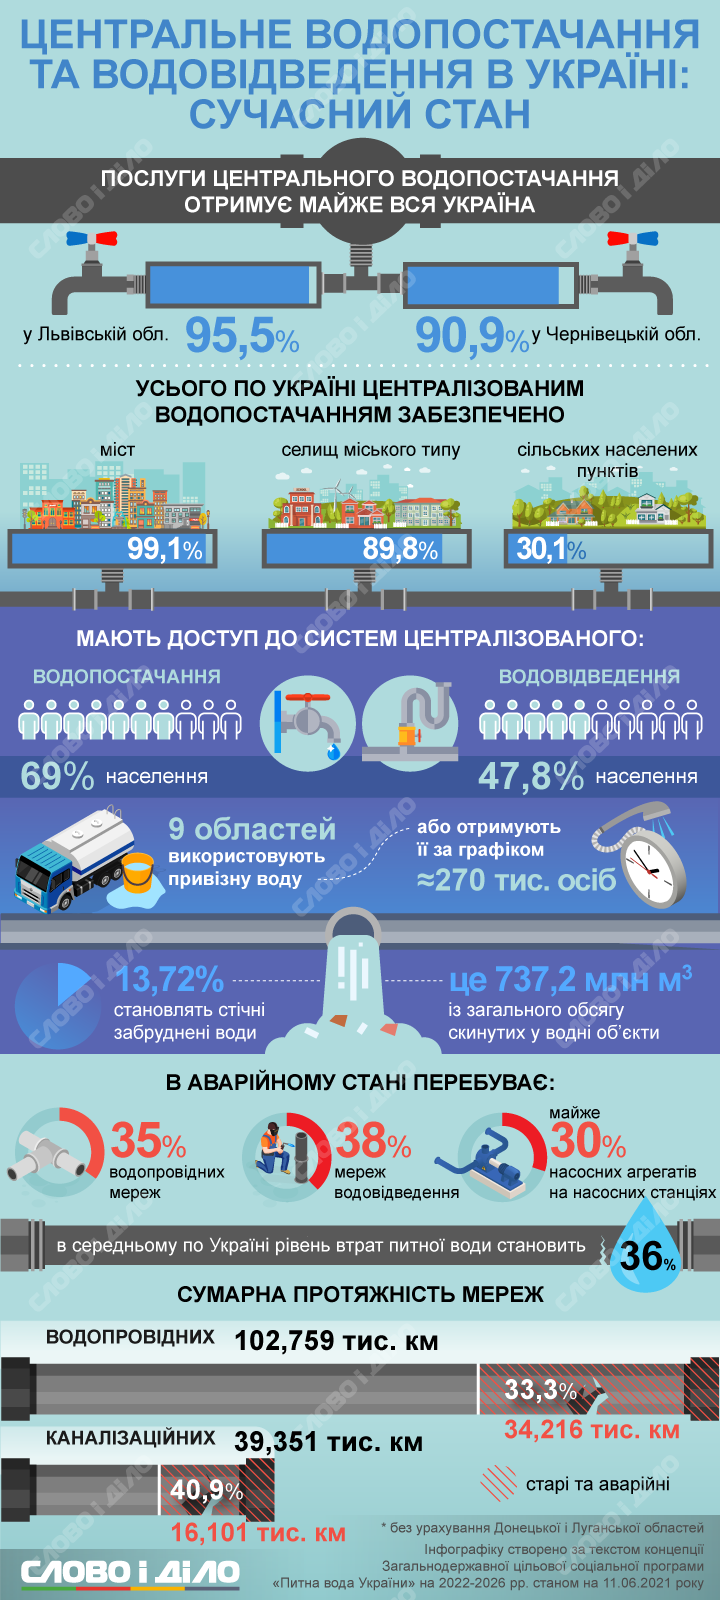 Системы водоснабжения в Украине